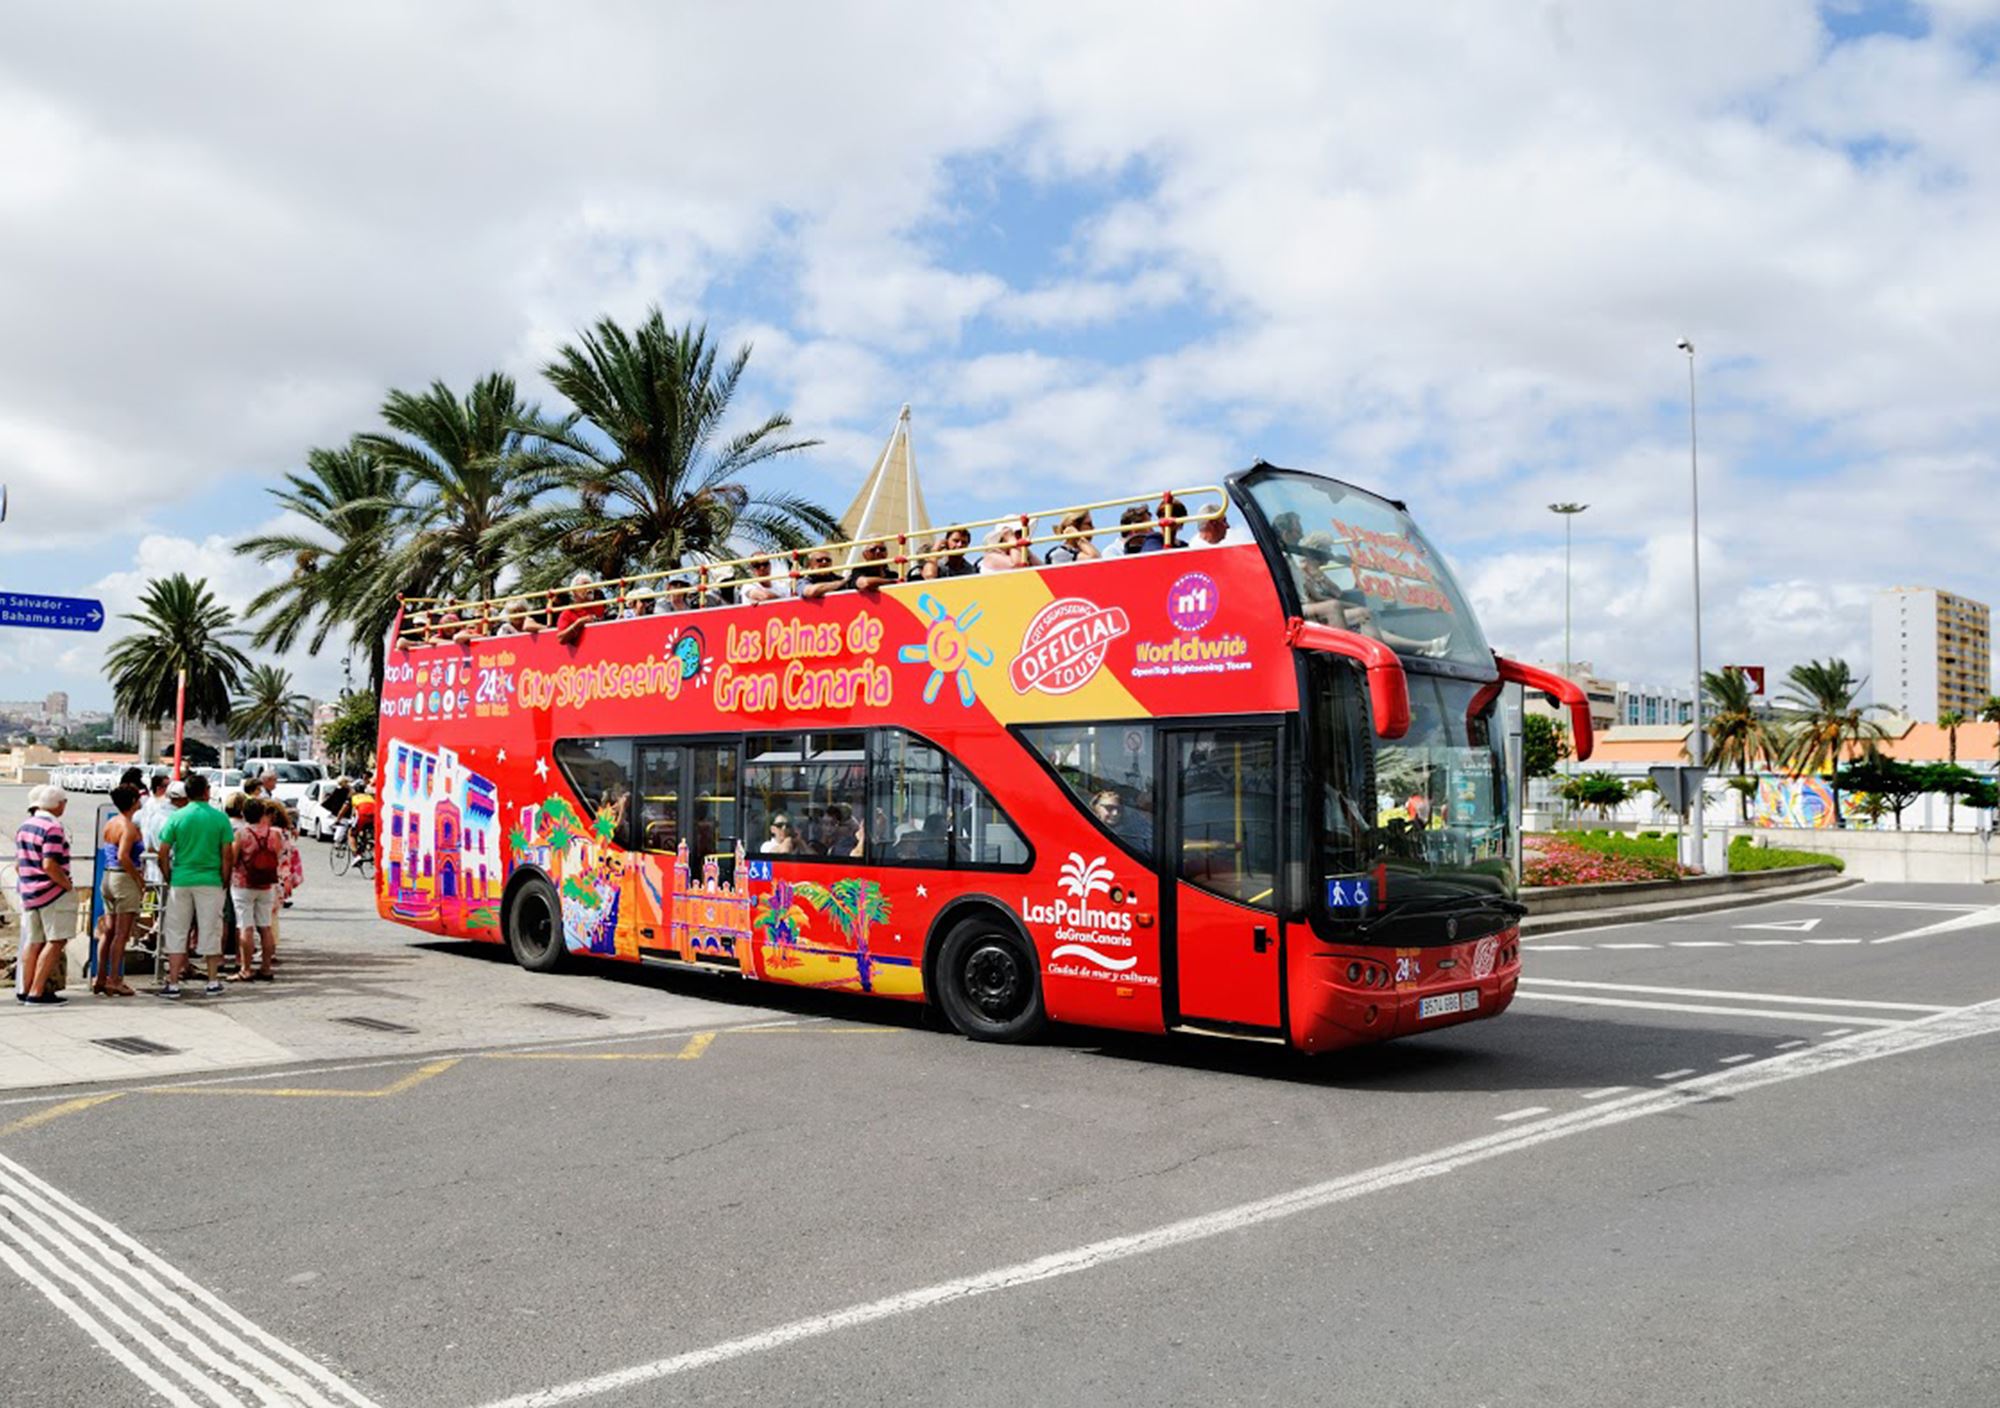 réservations réserver acheter tours Bus Touristique City Sightseeing Las Palmas de Gran Canaria billets visiter